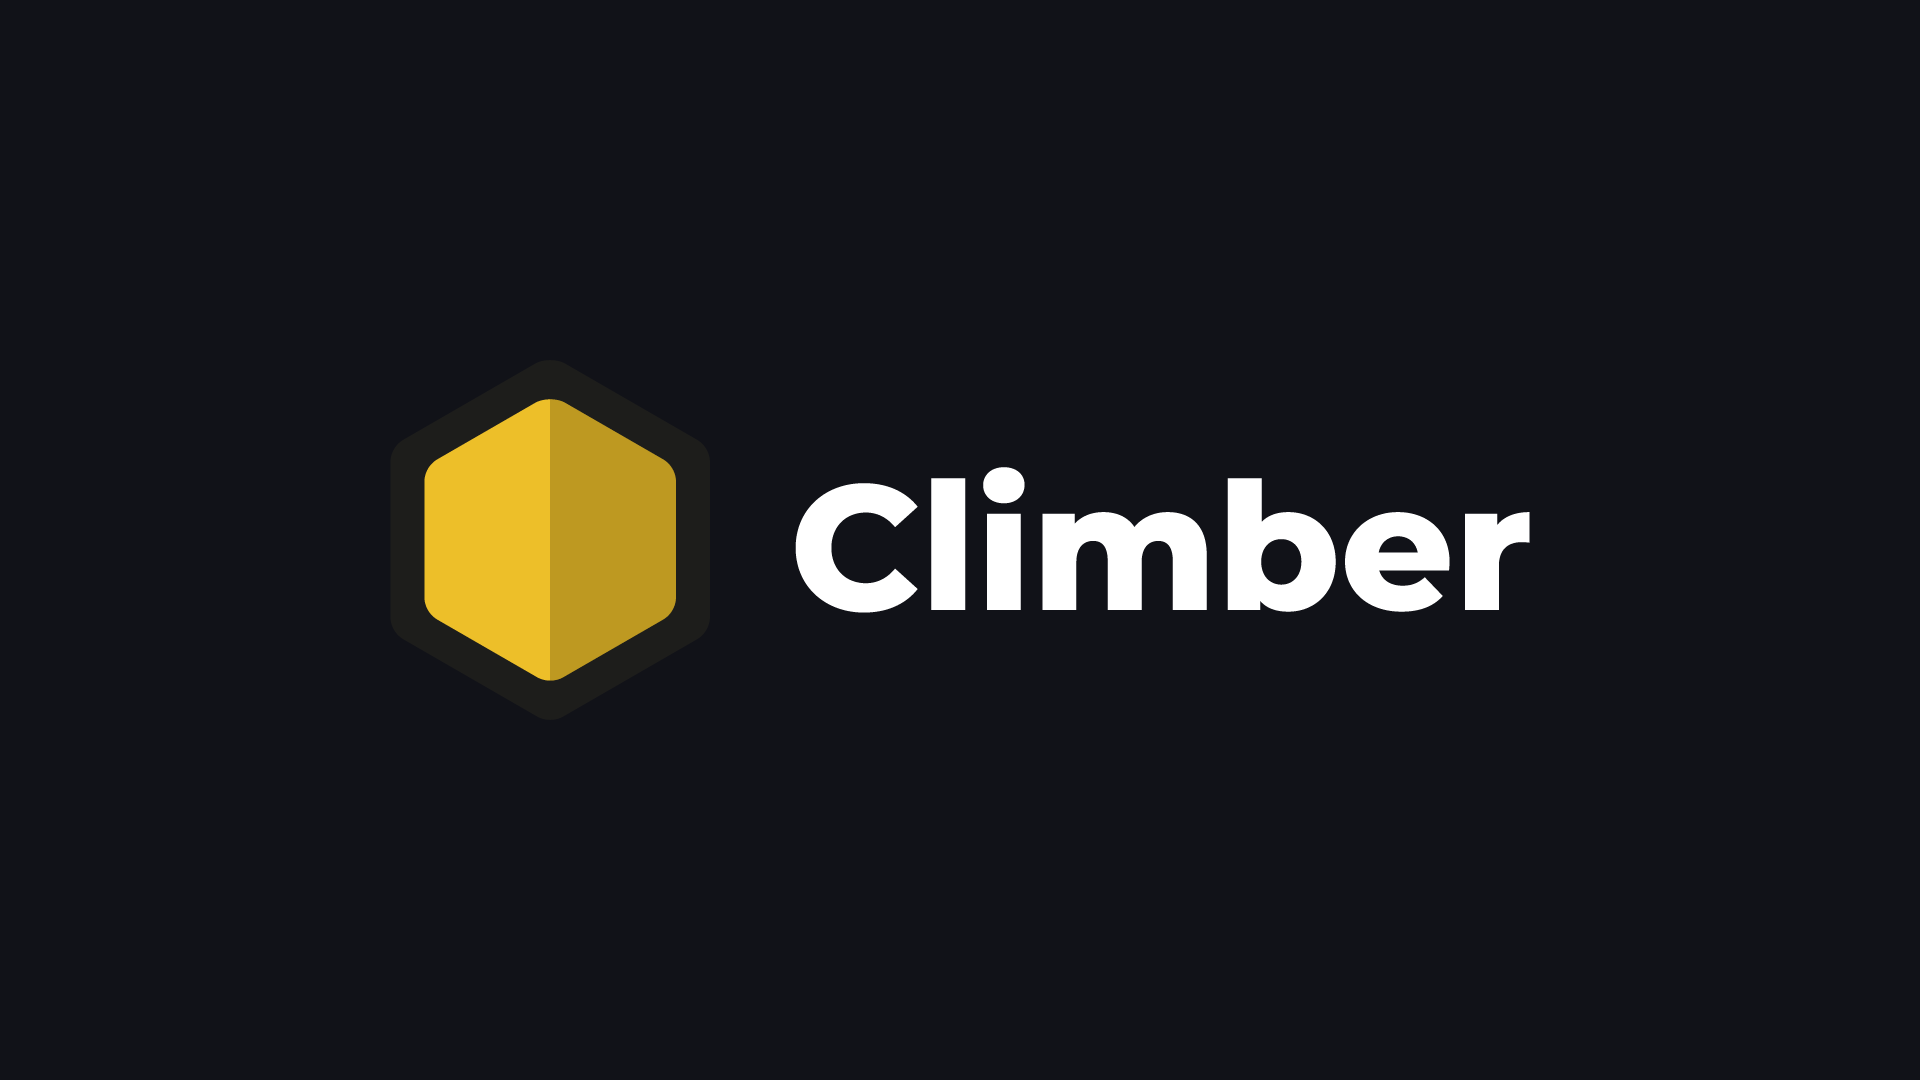 Climber graphic